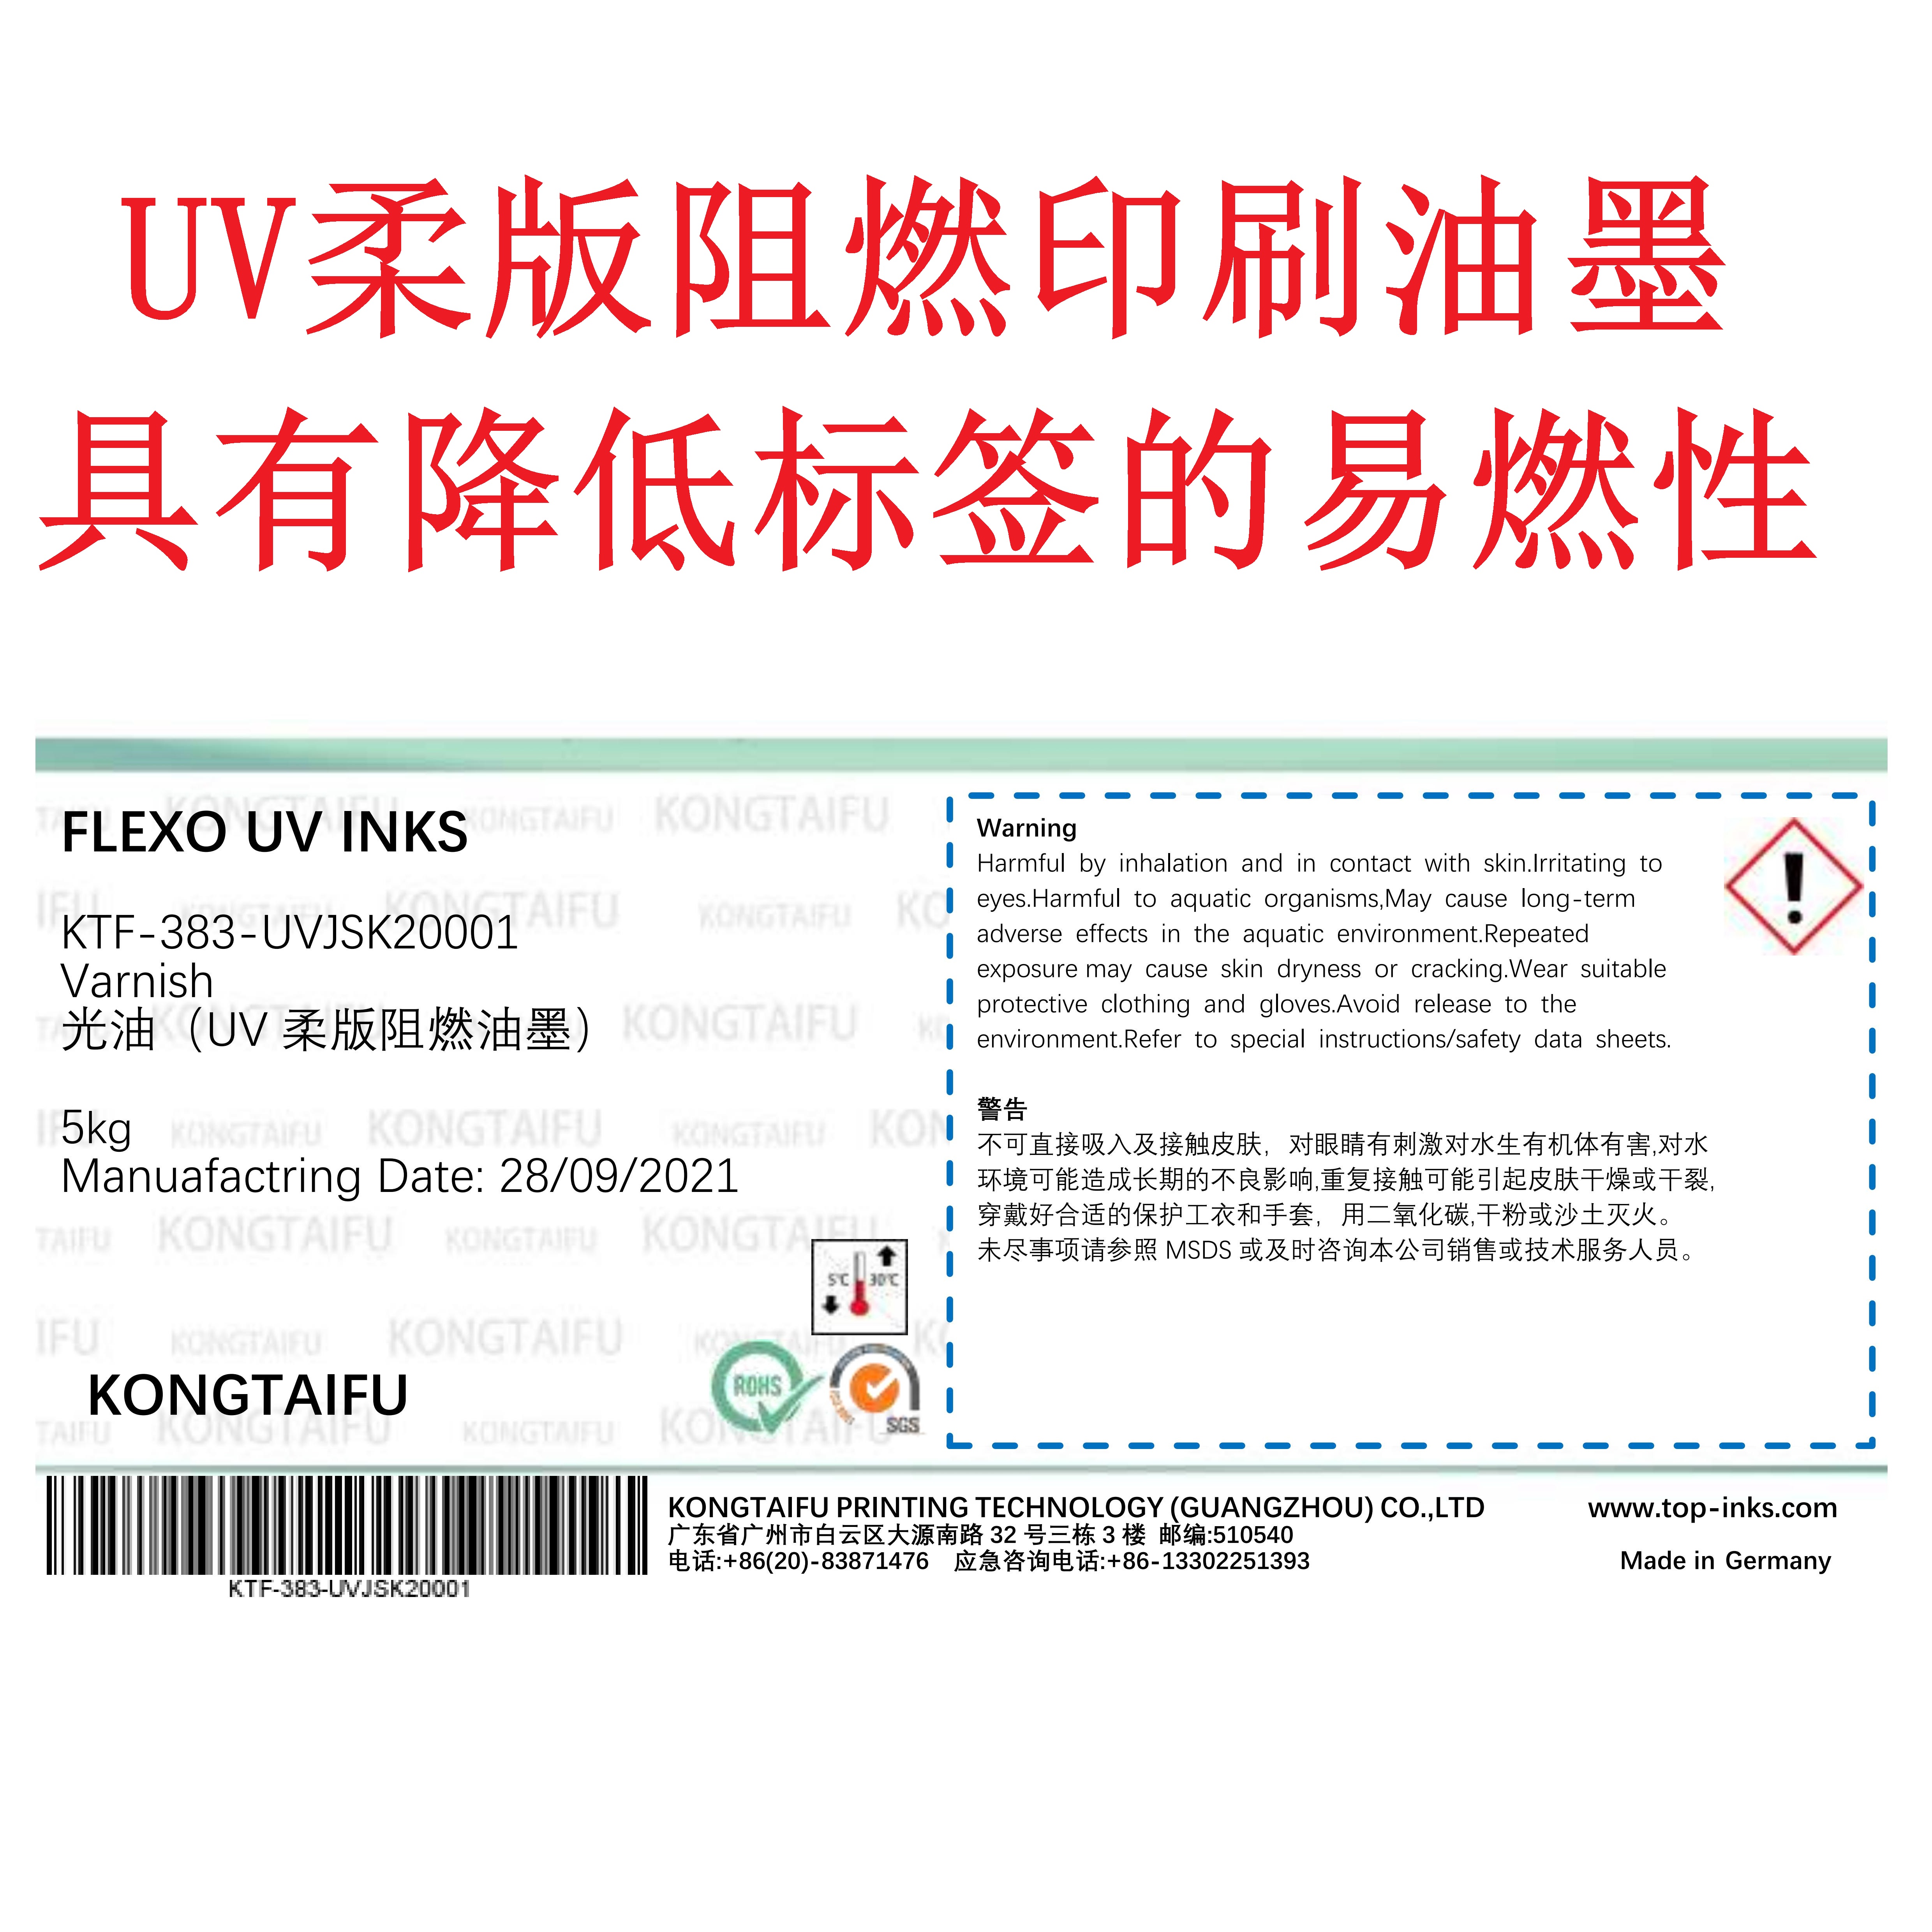 阻燃柔版UV印刷油墨 用于汽车上的不干胶警识标贴 阻燃印刷光油 阻燃光油油墨图片